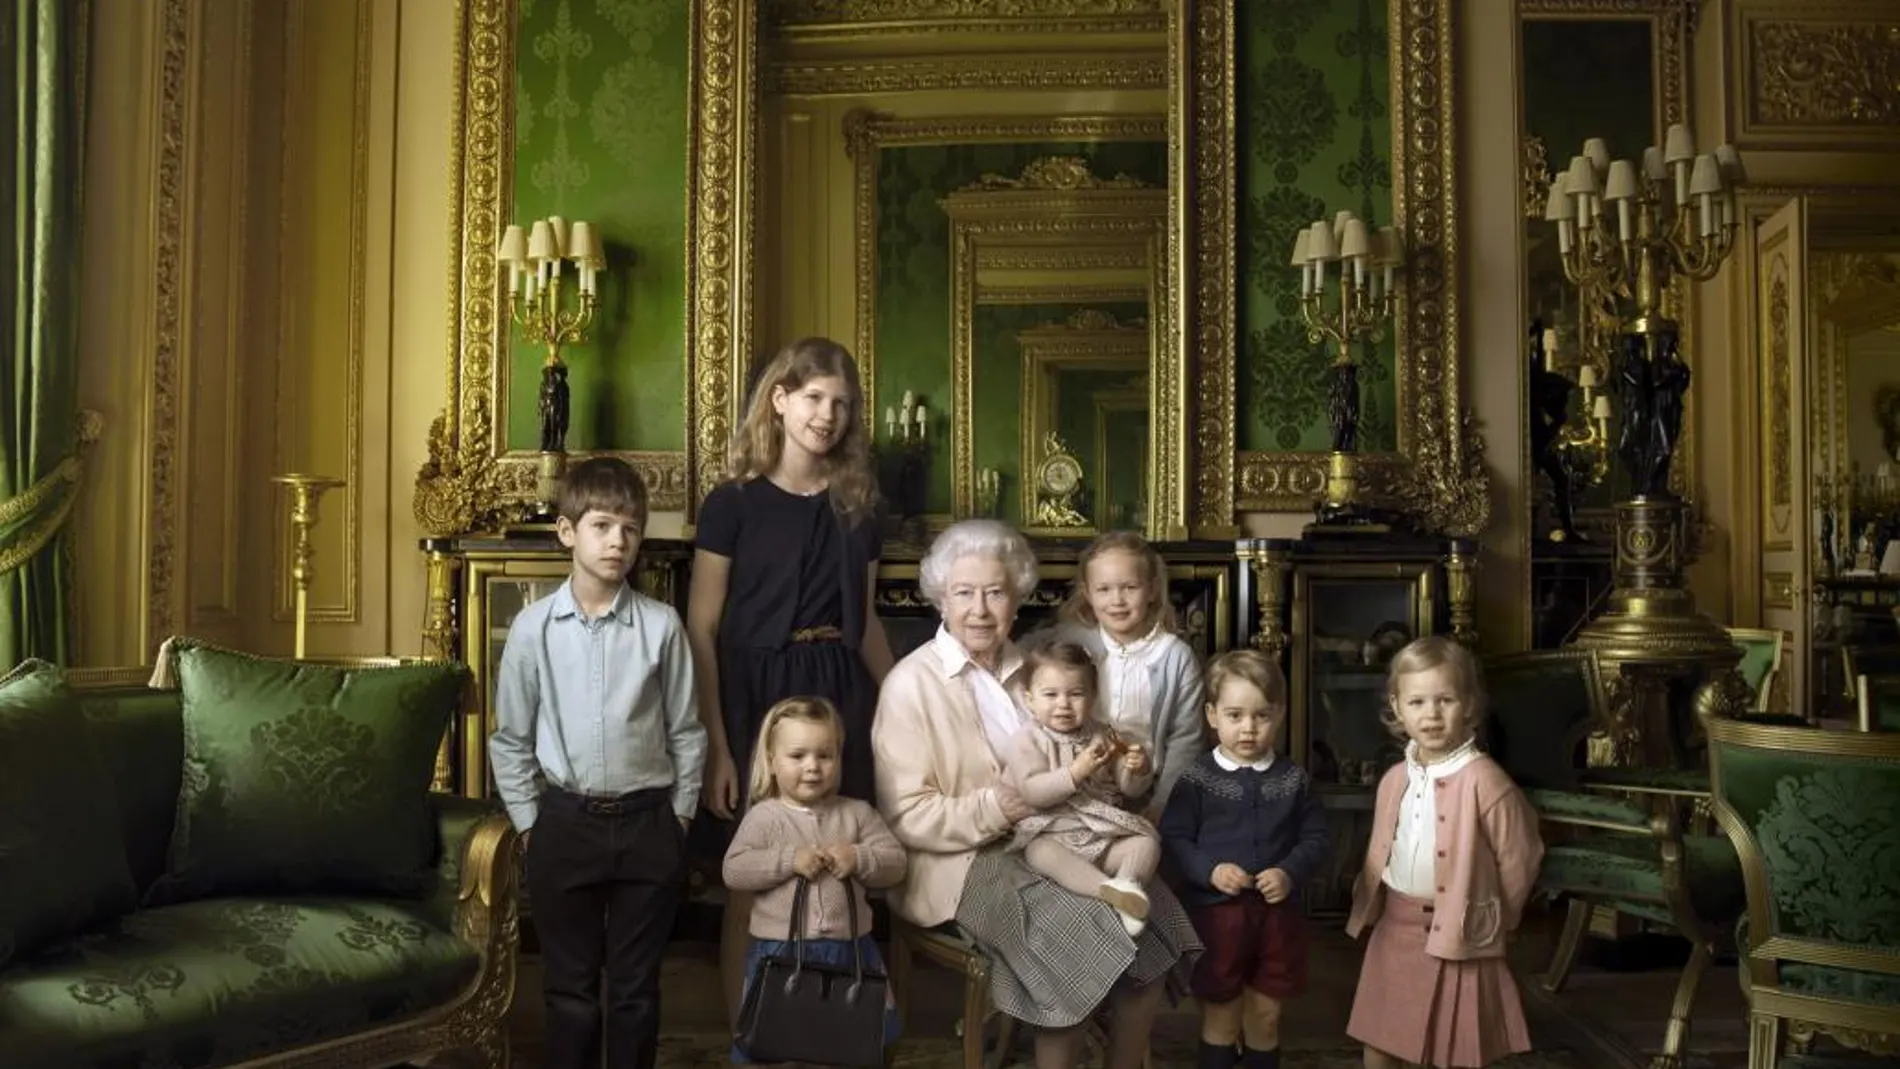 Fotografía de Annie Leibovitz que muestra un posado oficial de la reina Isabel II rodeada de sus nietos y bisnietos